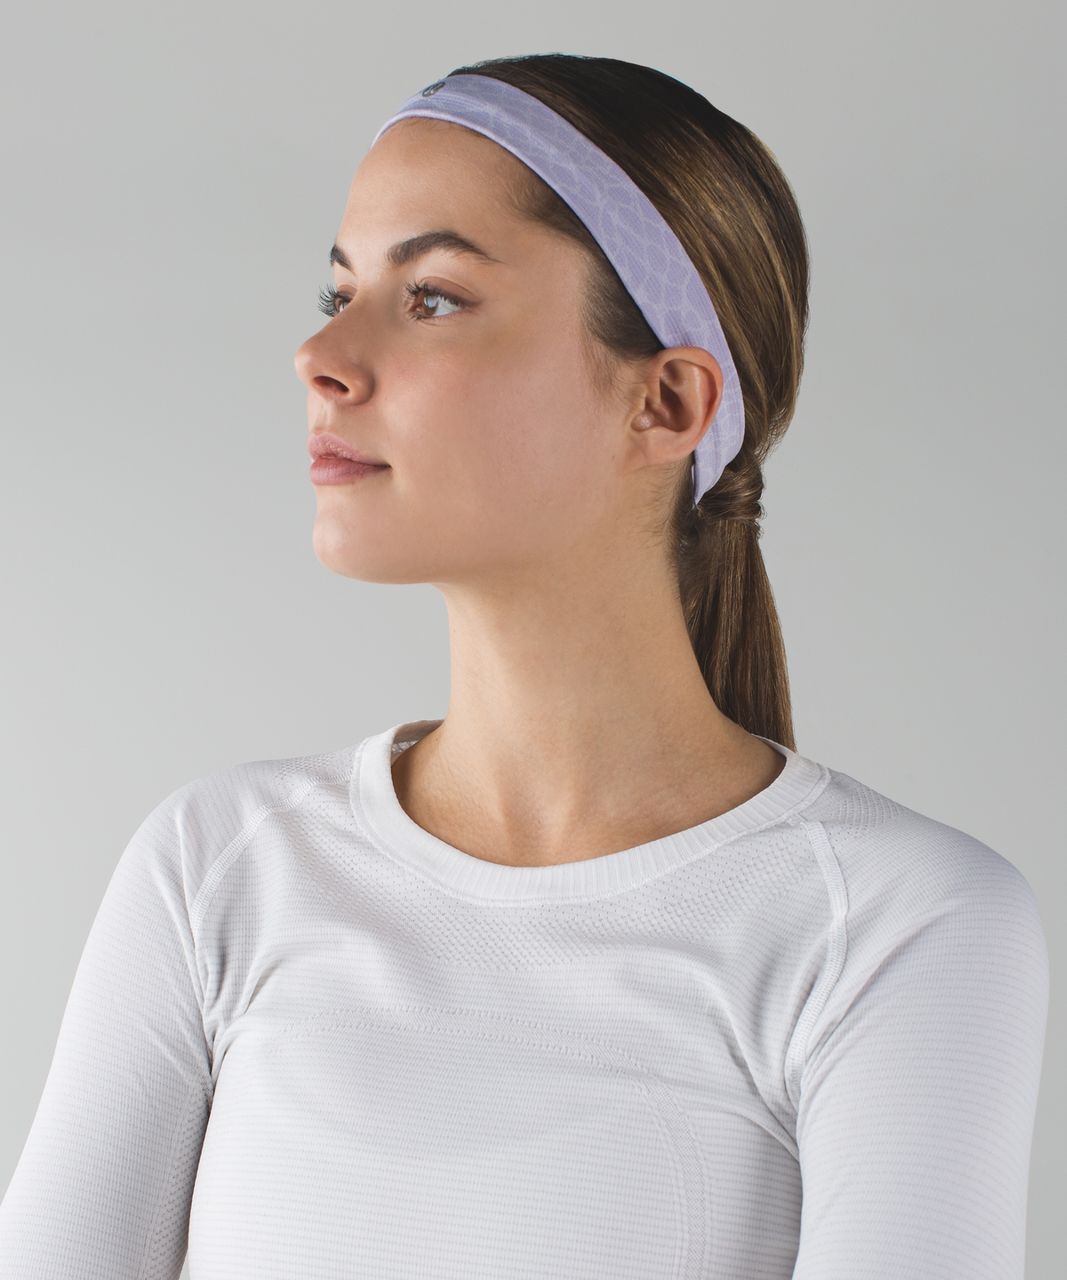 Lululemon Cardio Cross Trainer Headband - Heathered Lilac